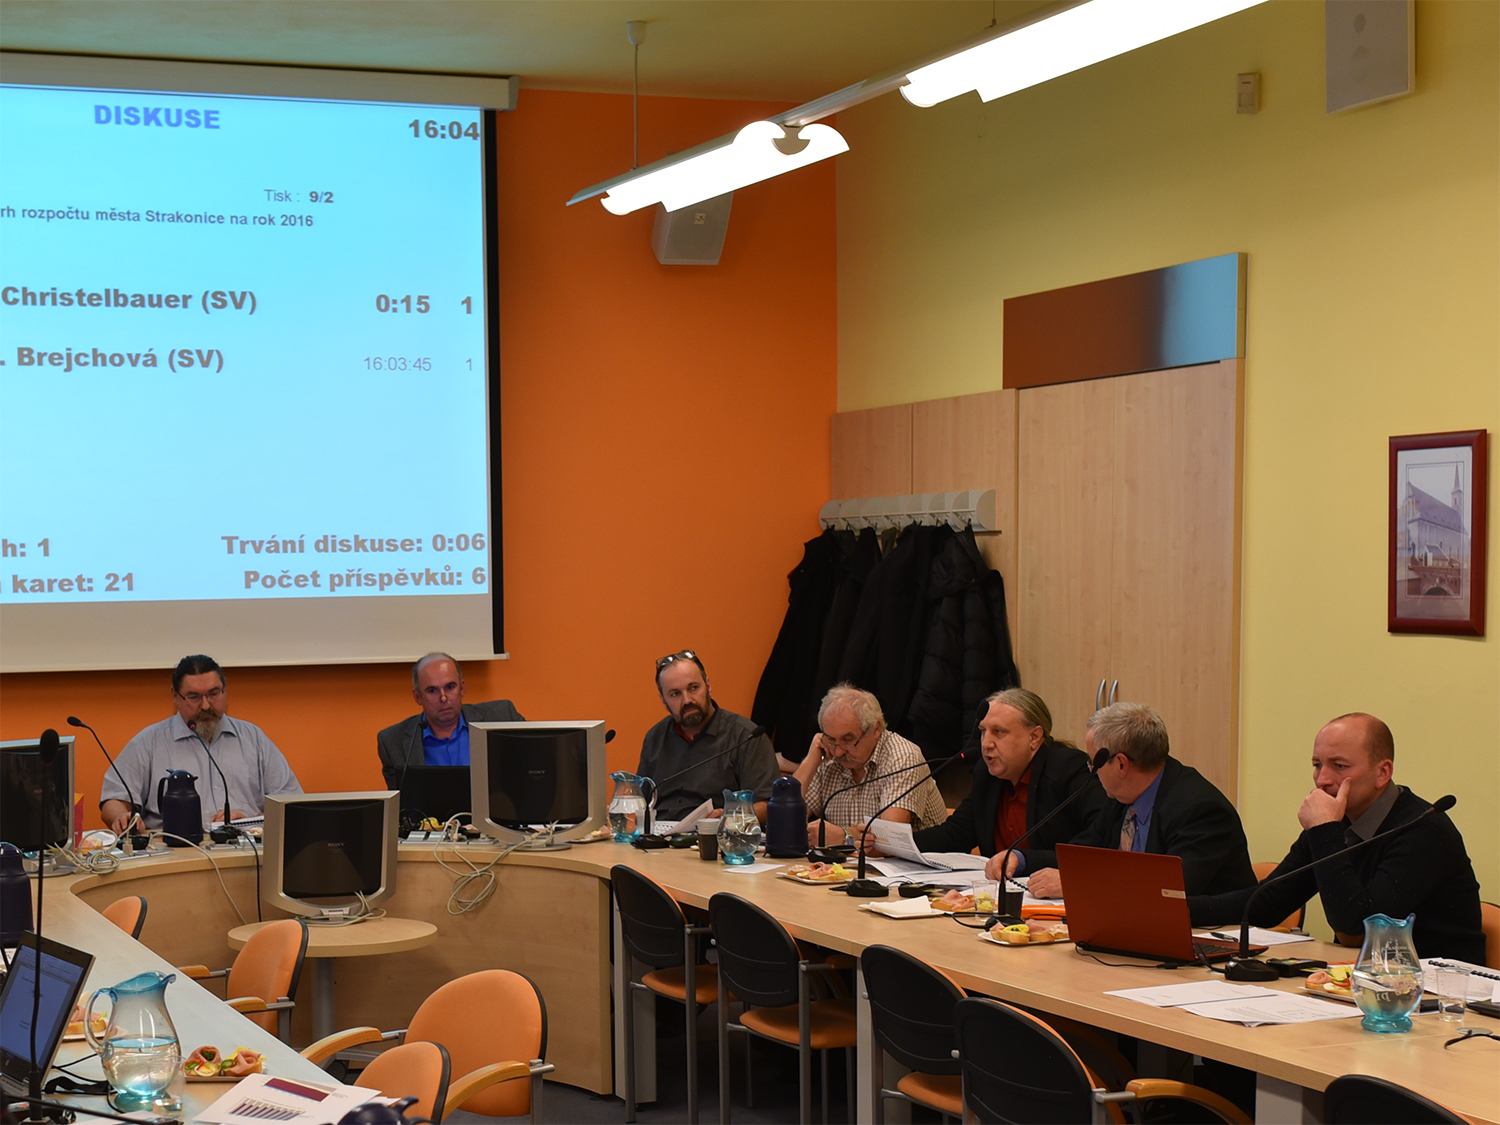 Zastupitelstvo č. 9 konané 16. prosince 2015, třetí zprava právě diskutující František Christelbauer